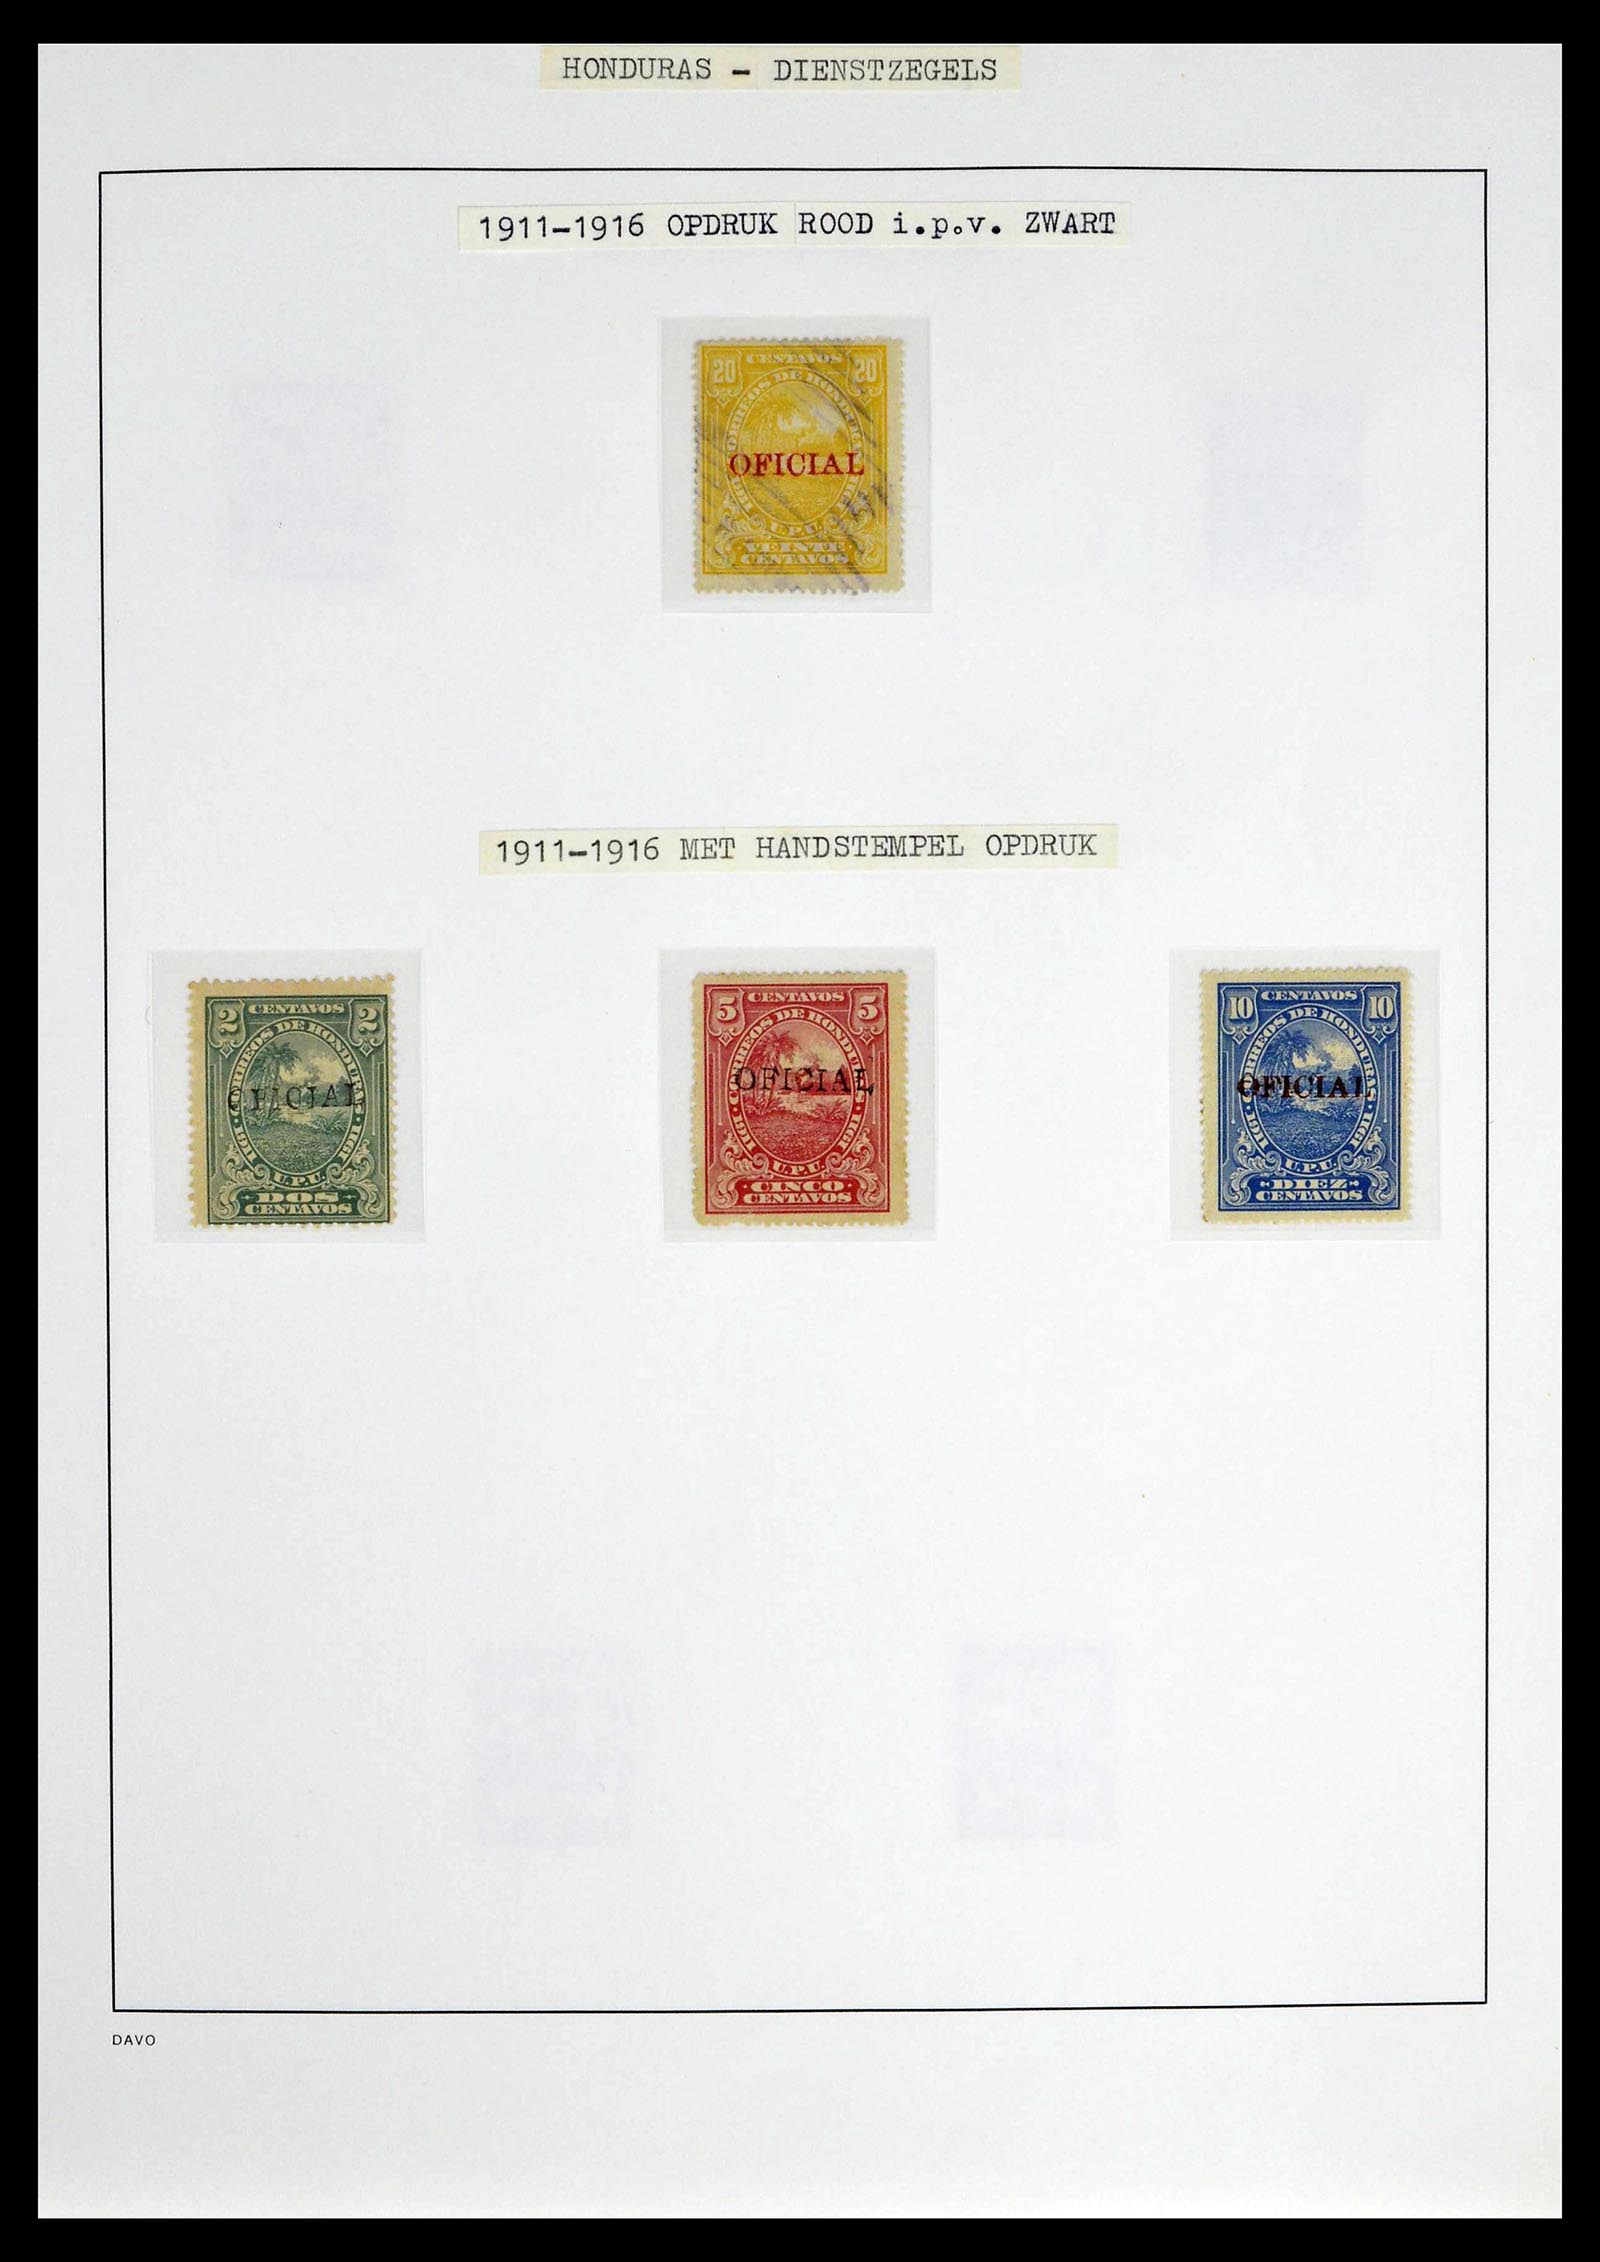 39404 0009 - Postzegelverzameling 39404 Honduras dienstzegels 1890-1974.